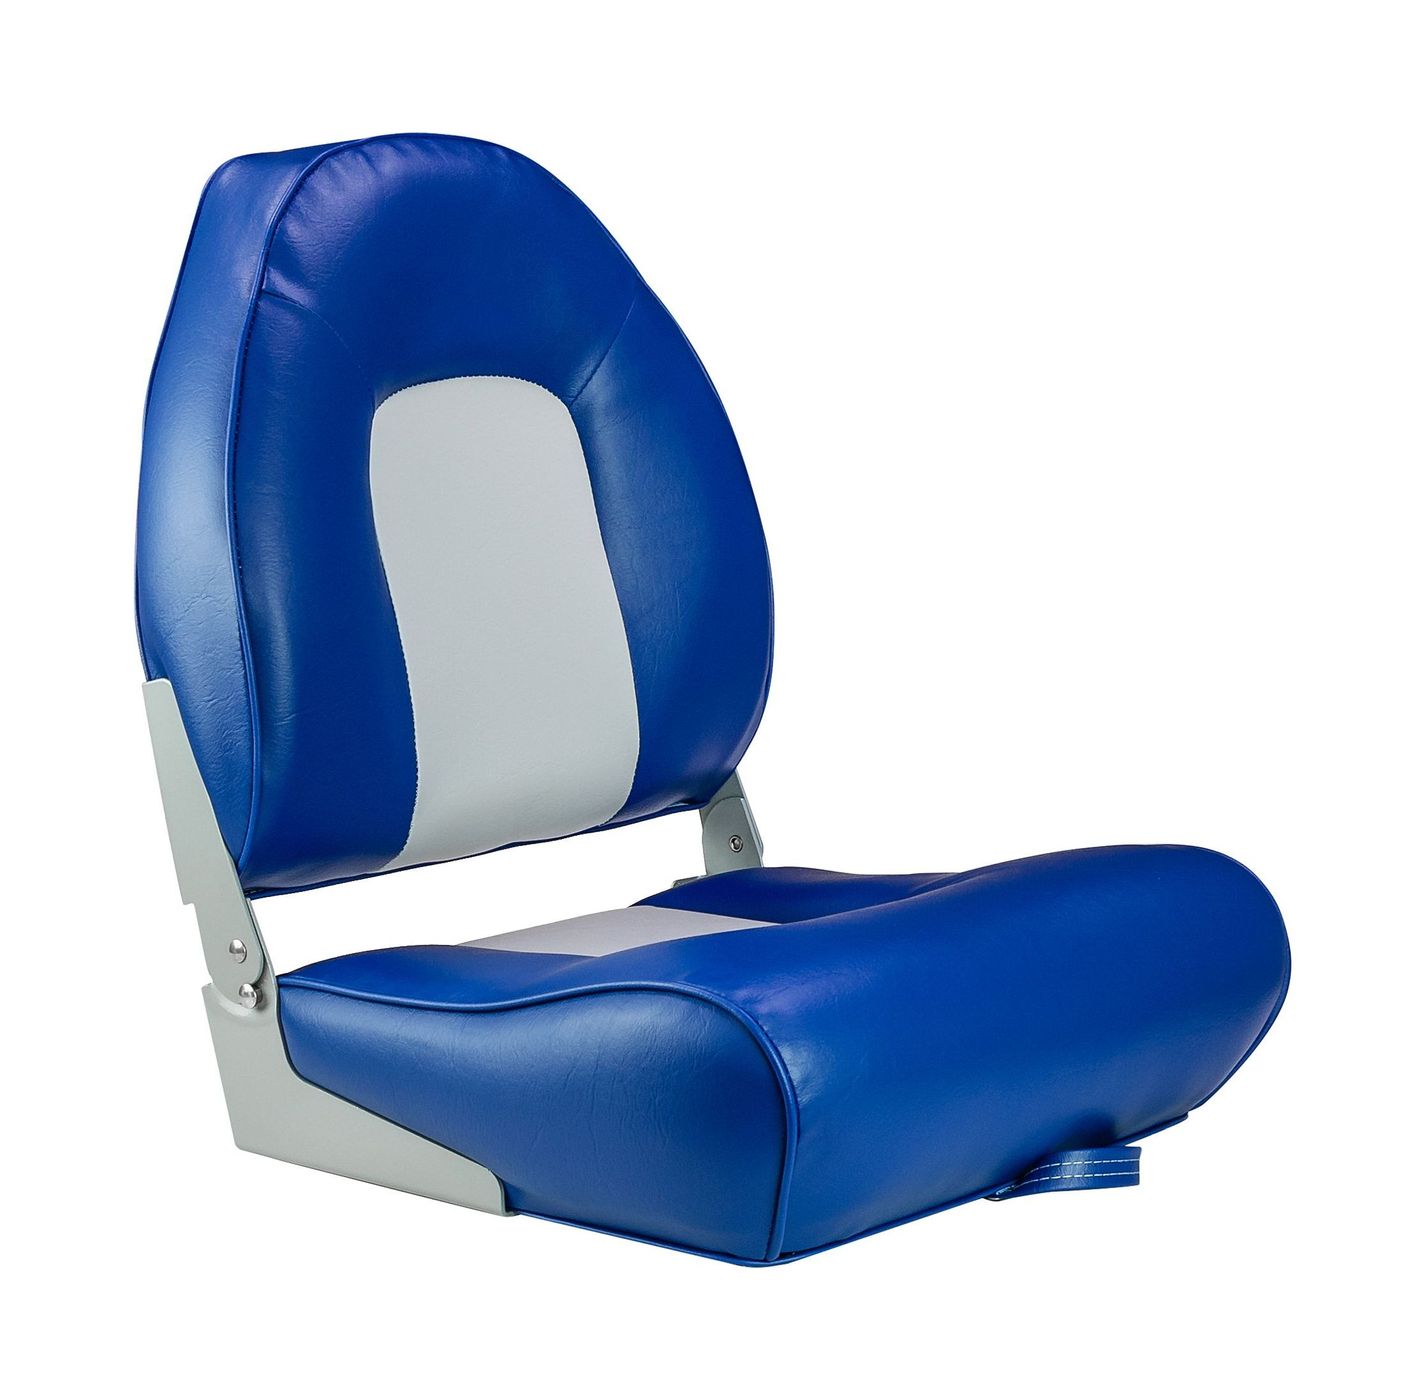 Кресло мягкое складное, обивка винил, цвет синий/серый, Marine Rocket 75116GB-MR фен nobrand 13 1600 вт серый синий